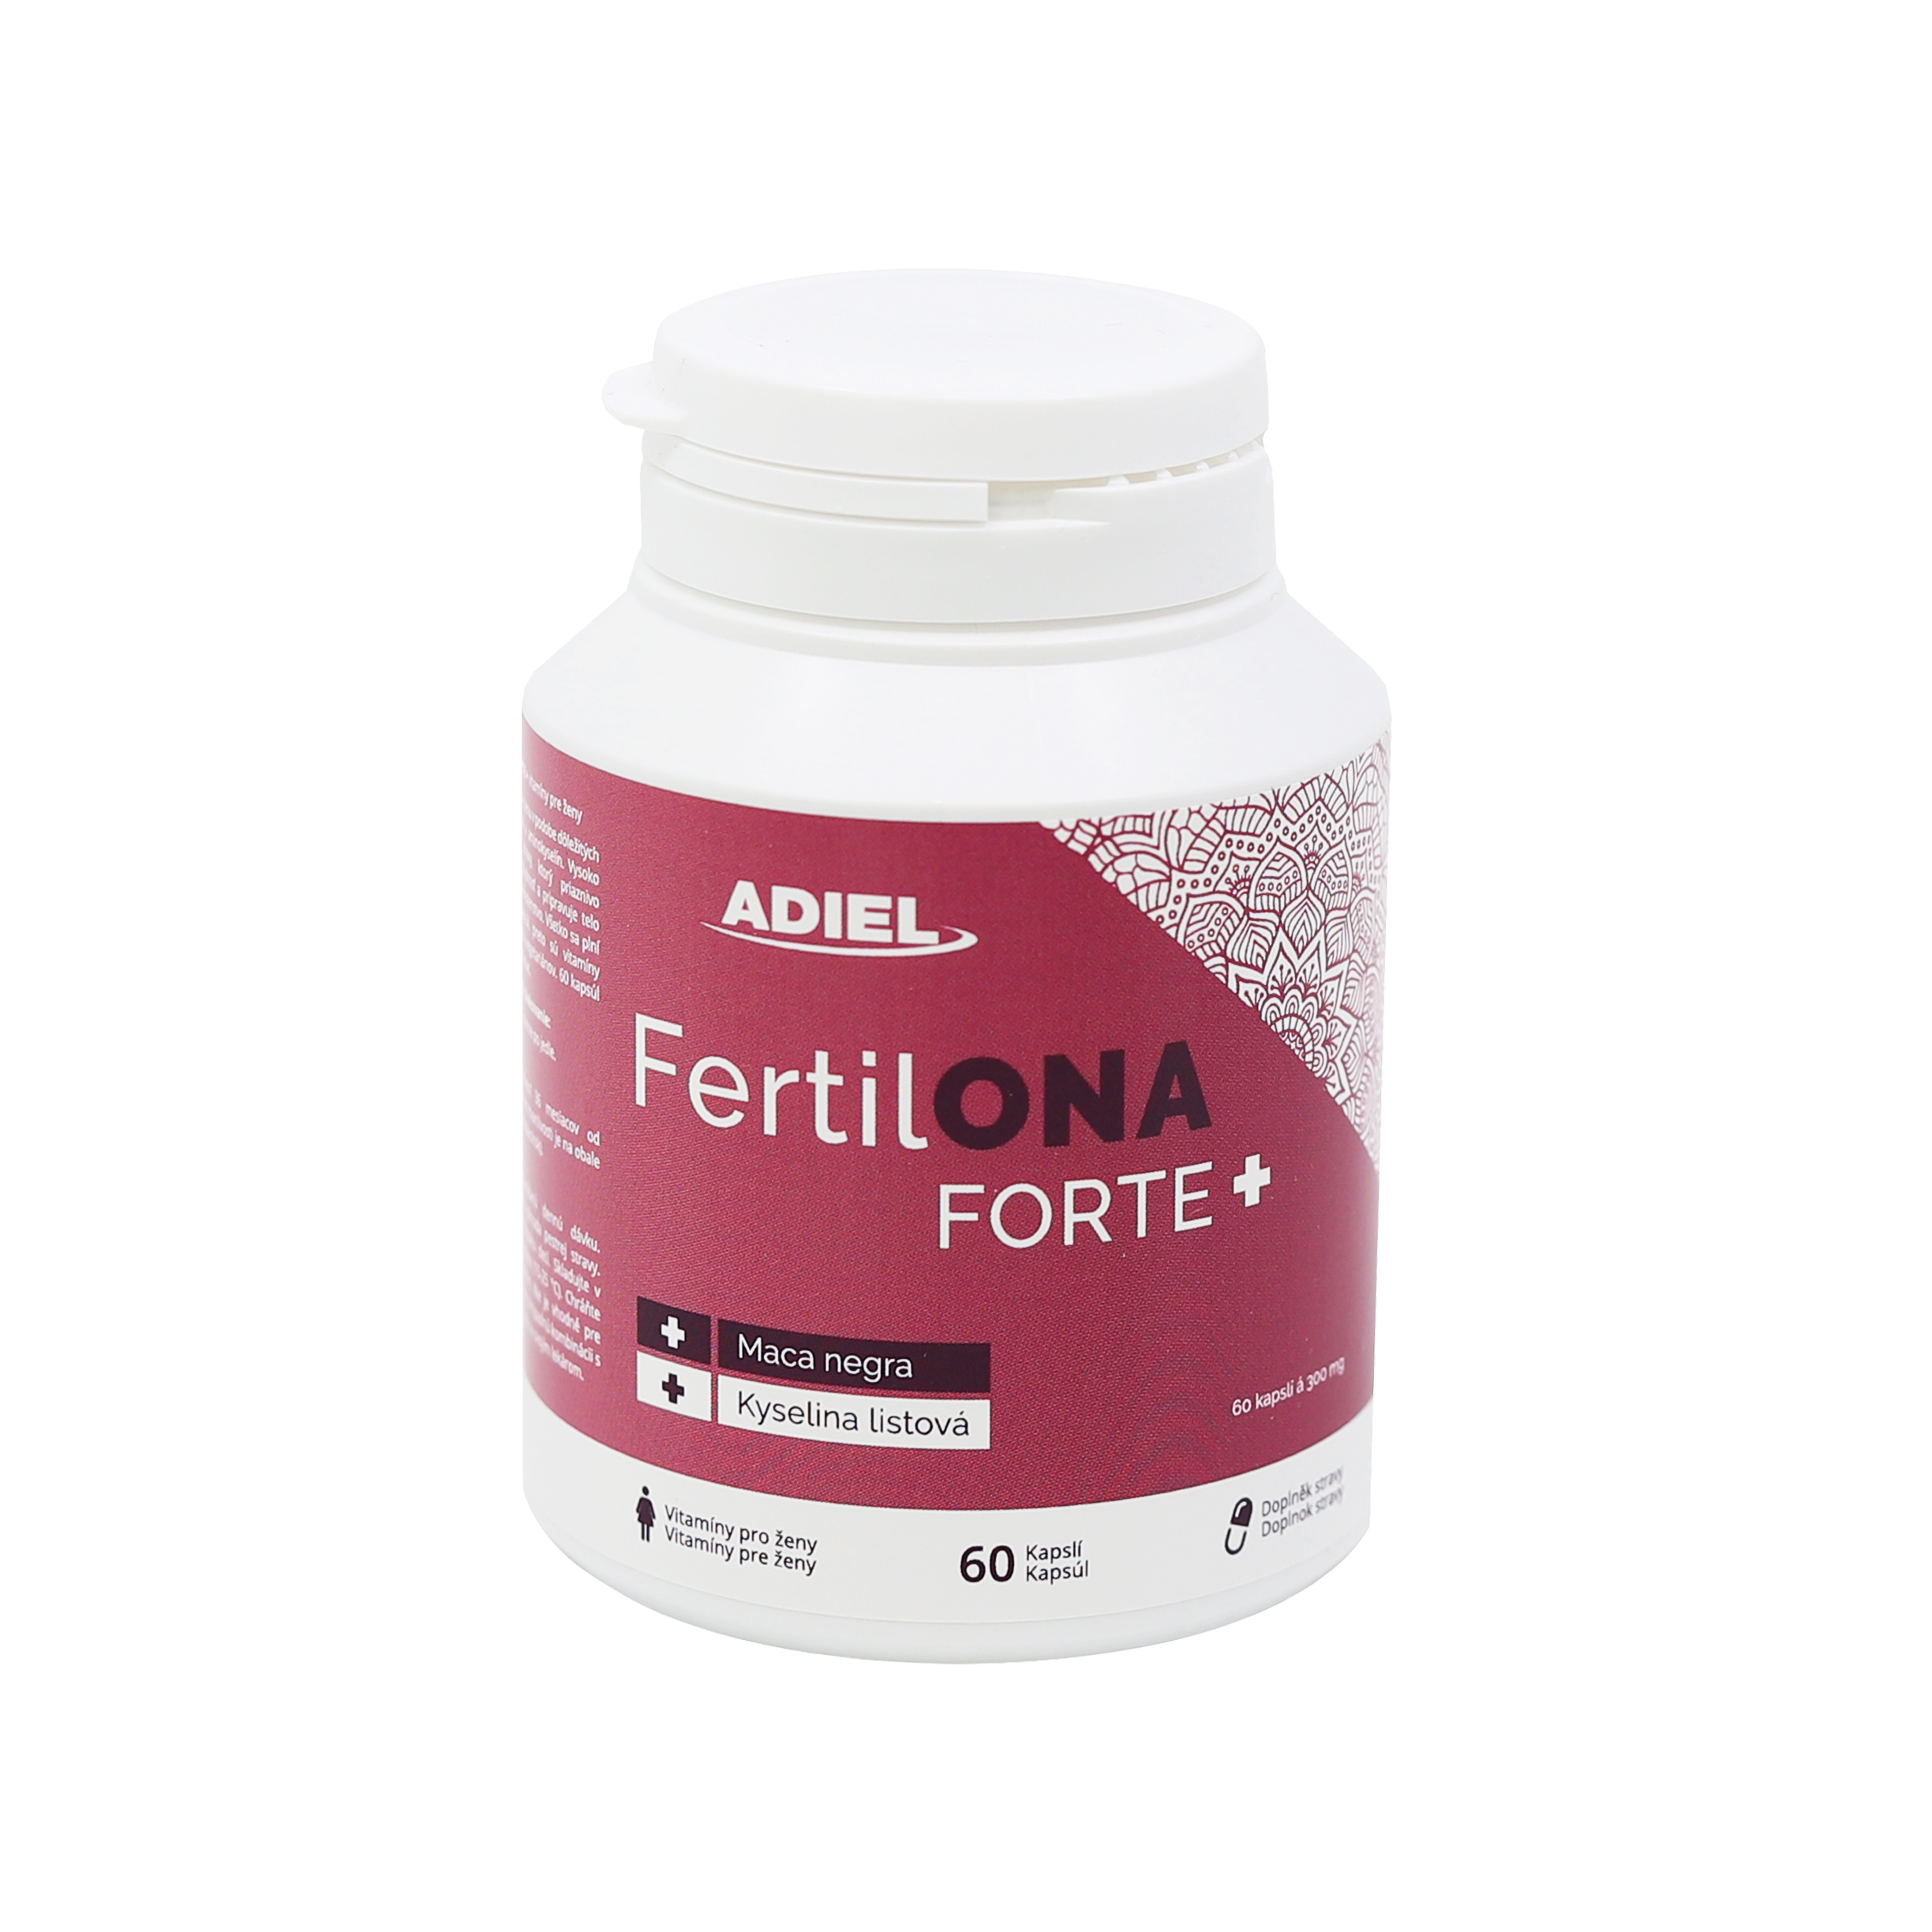 ADIEL FertilONA forte plus - Vitamíny pro ženy 60 kapslí 1 ks v balení: 1x60 kasplí